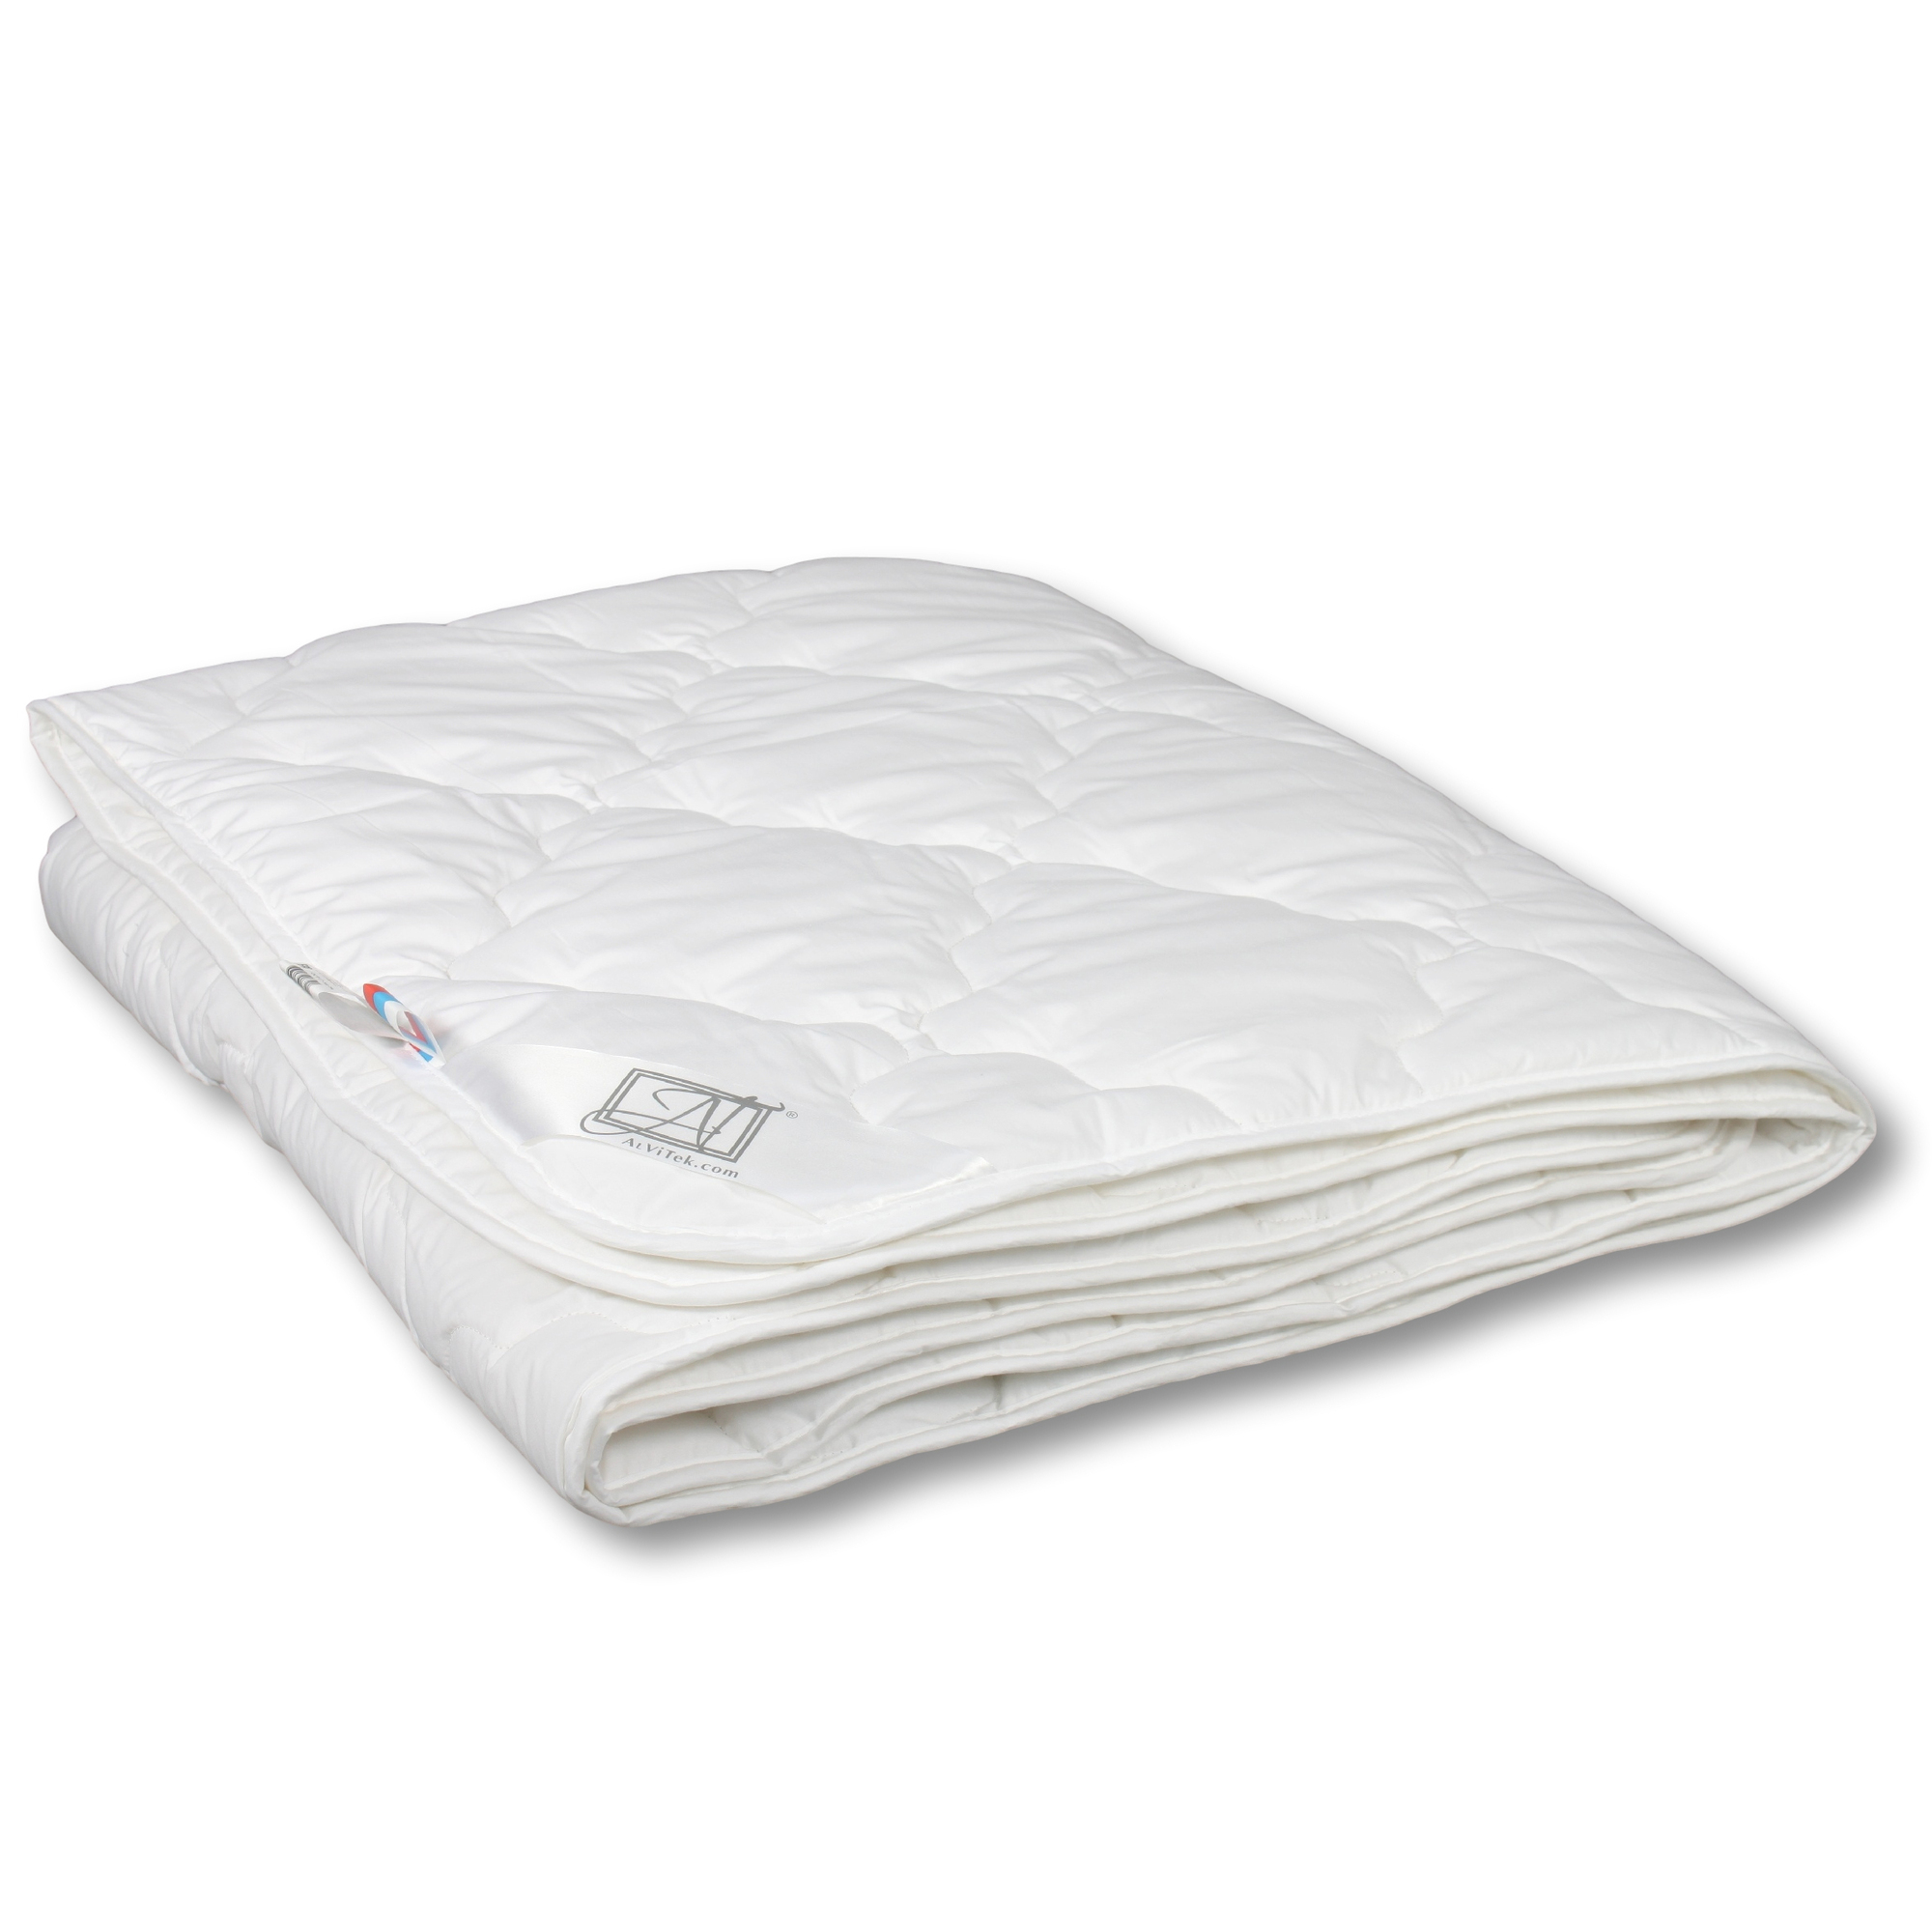 Одеяло Angie Цвет: Белый (140х205 см), размер 140х205 см avt88169 Одеяло Angie Цвет: Белый (140х205 см) - фото 1